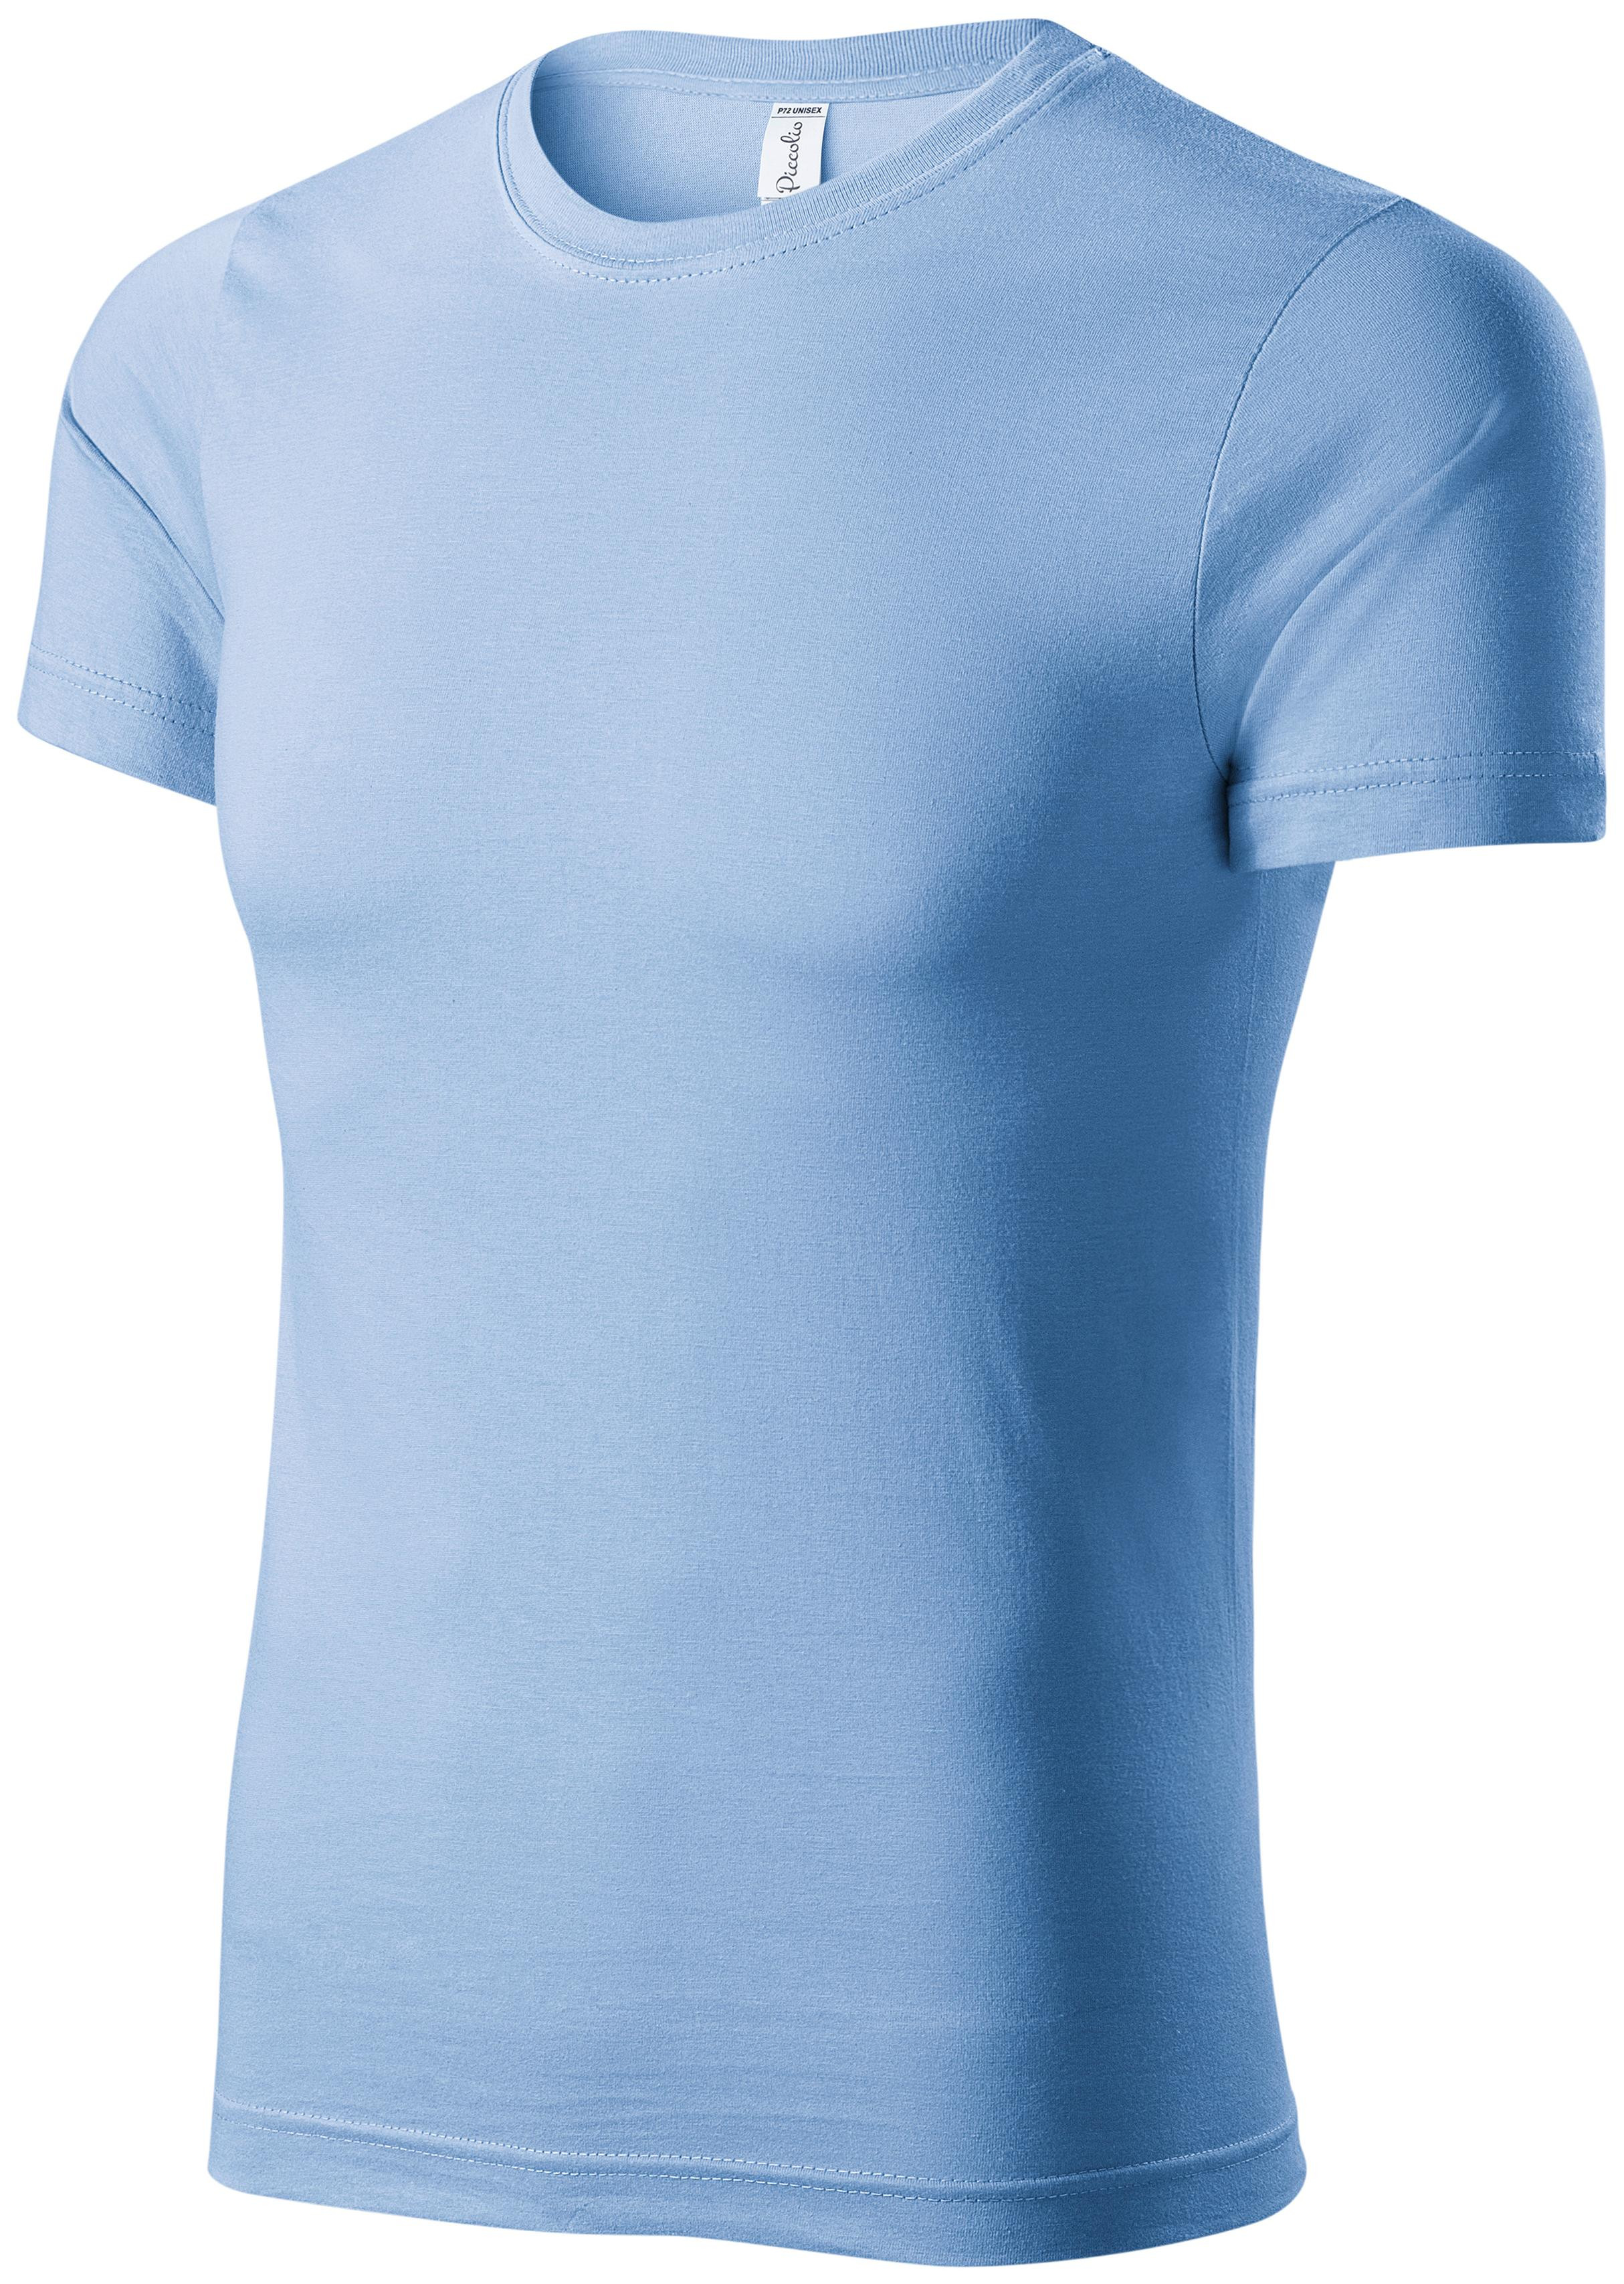 Detské ľahké tričko, nebeská modrá, 122cm / 6rokov